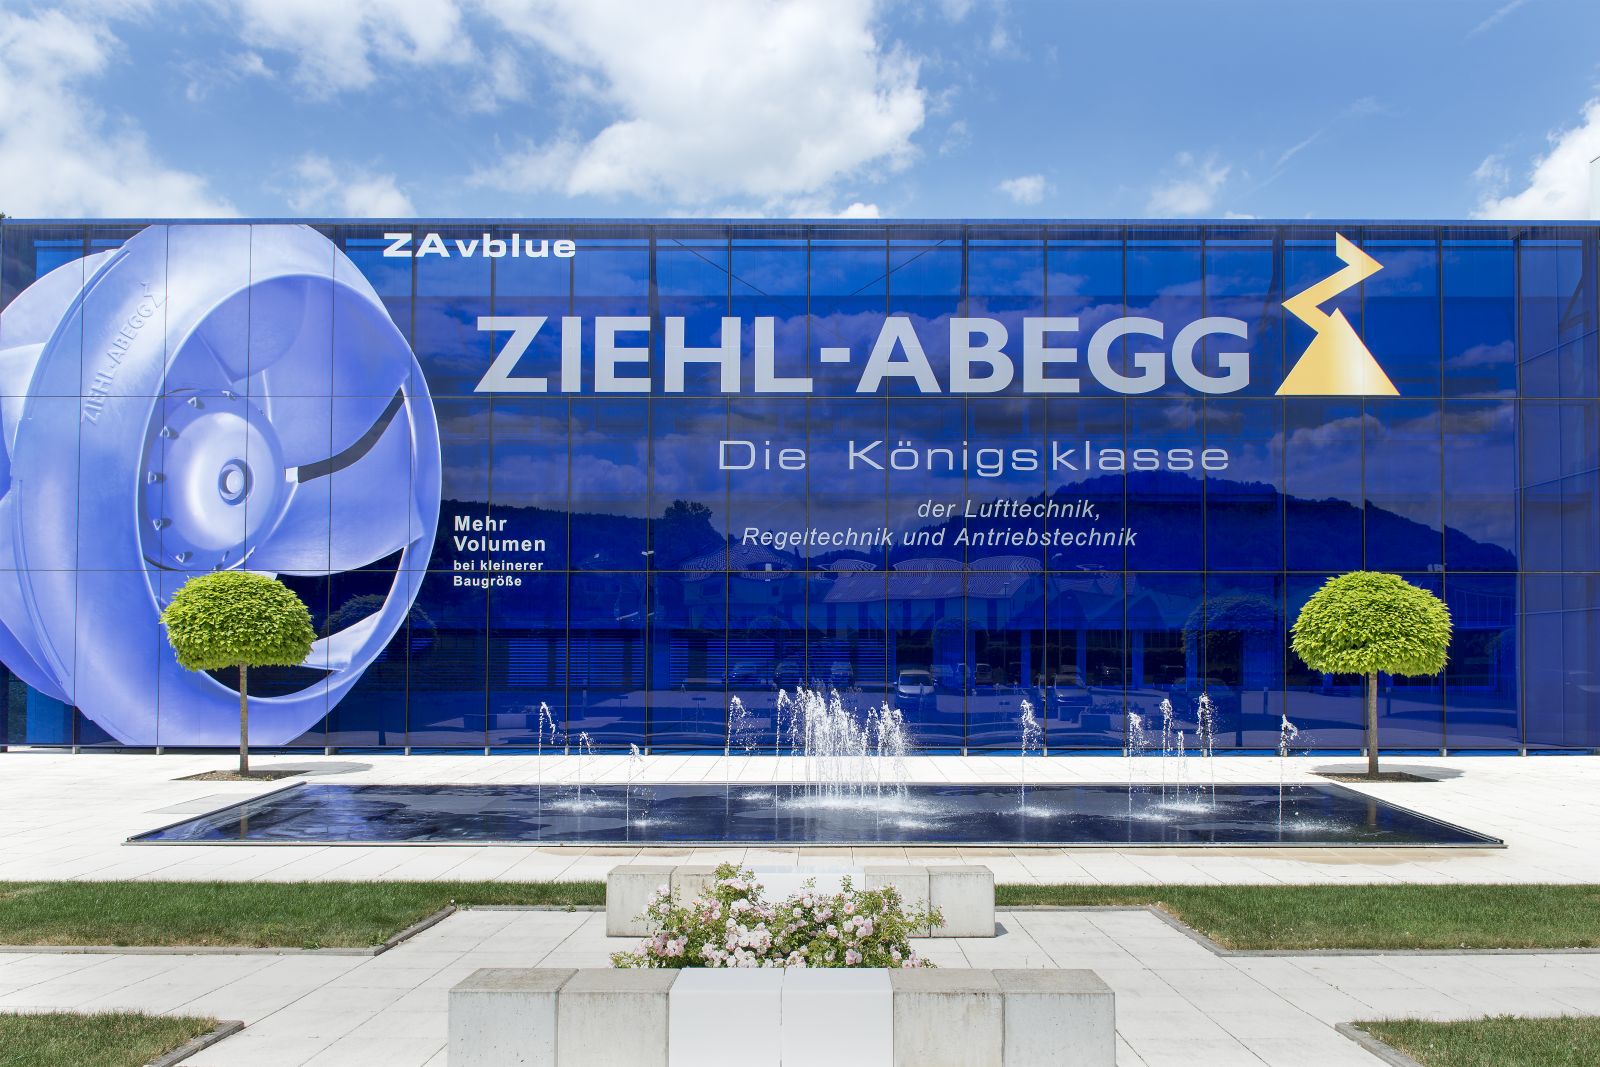 Vì sao nên chọn máy kéo ZIEHL-ABEGG, Đức